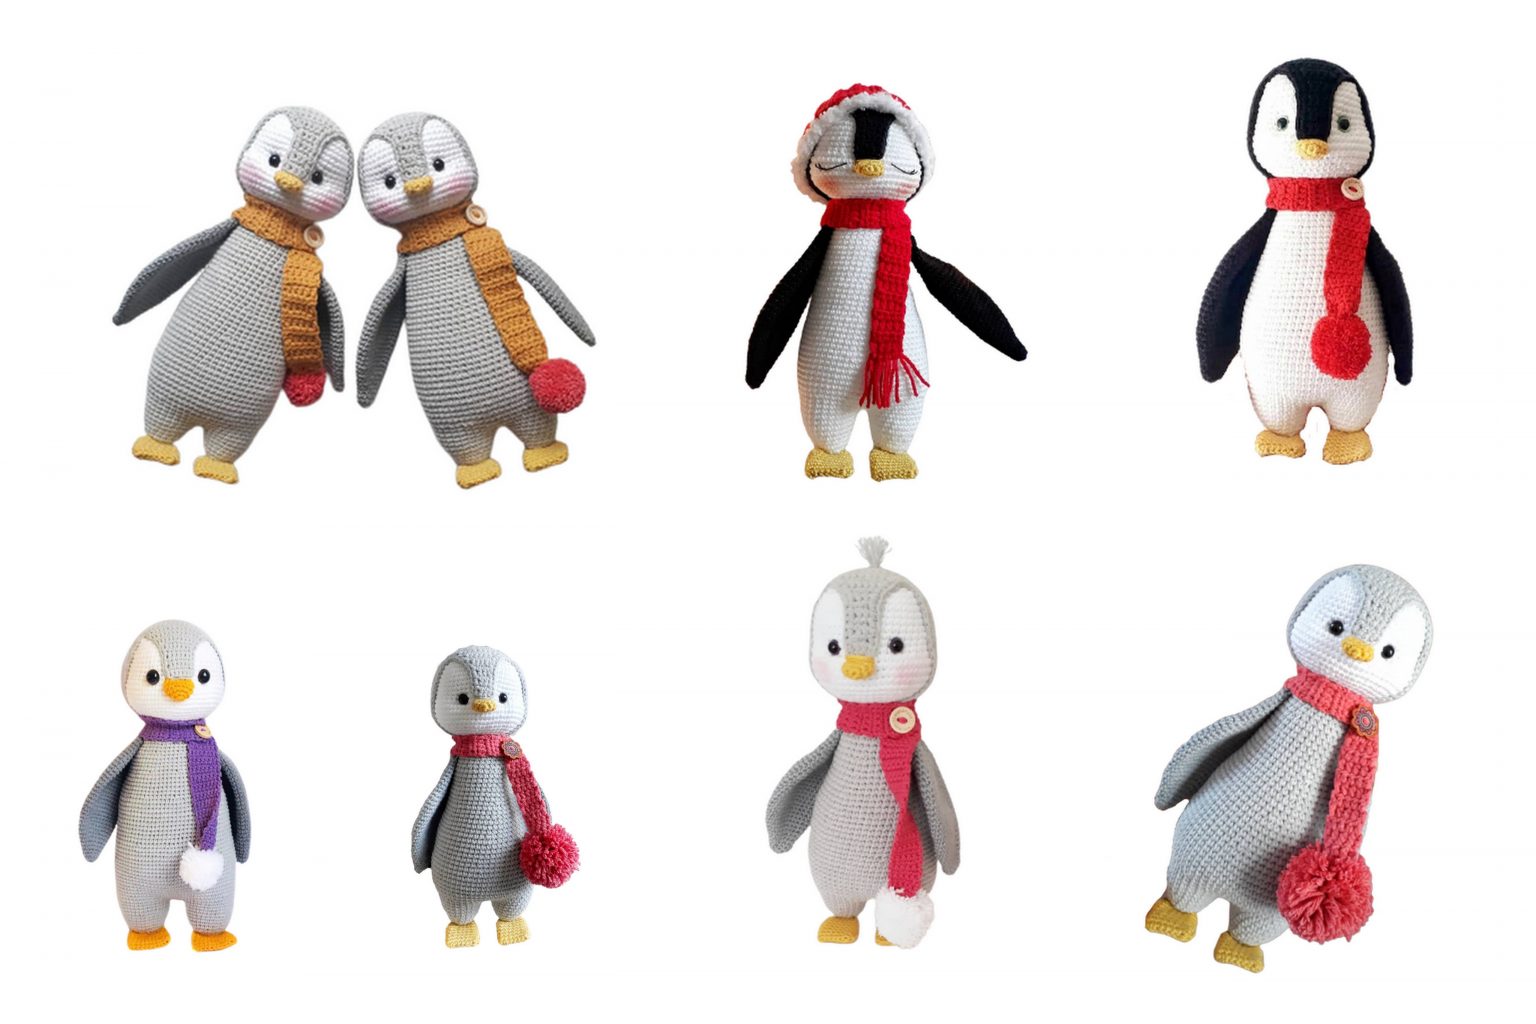 Penguin Amigurumi Free Pattern - Free Amigurumi Crochet Patterns